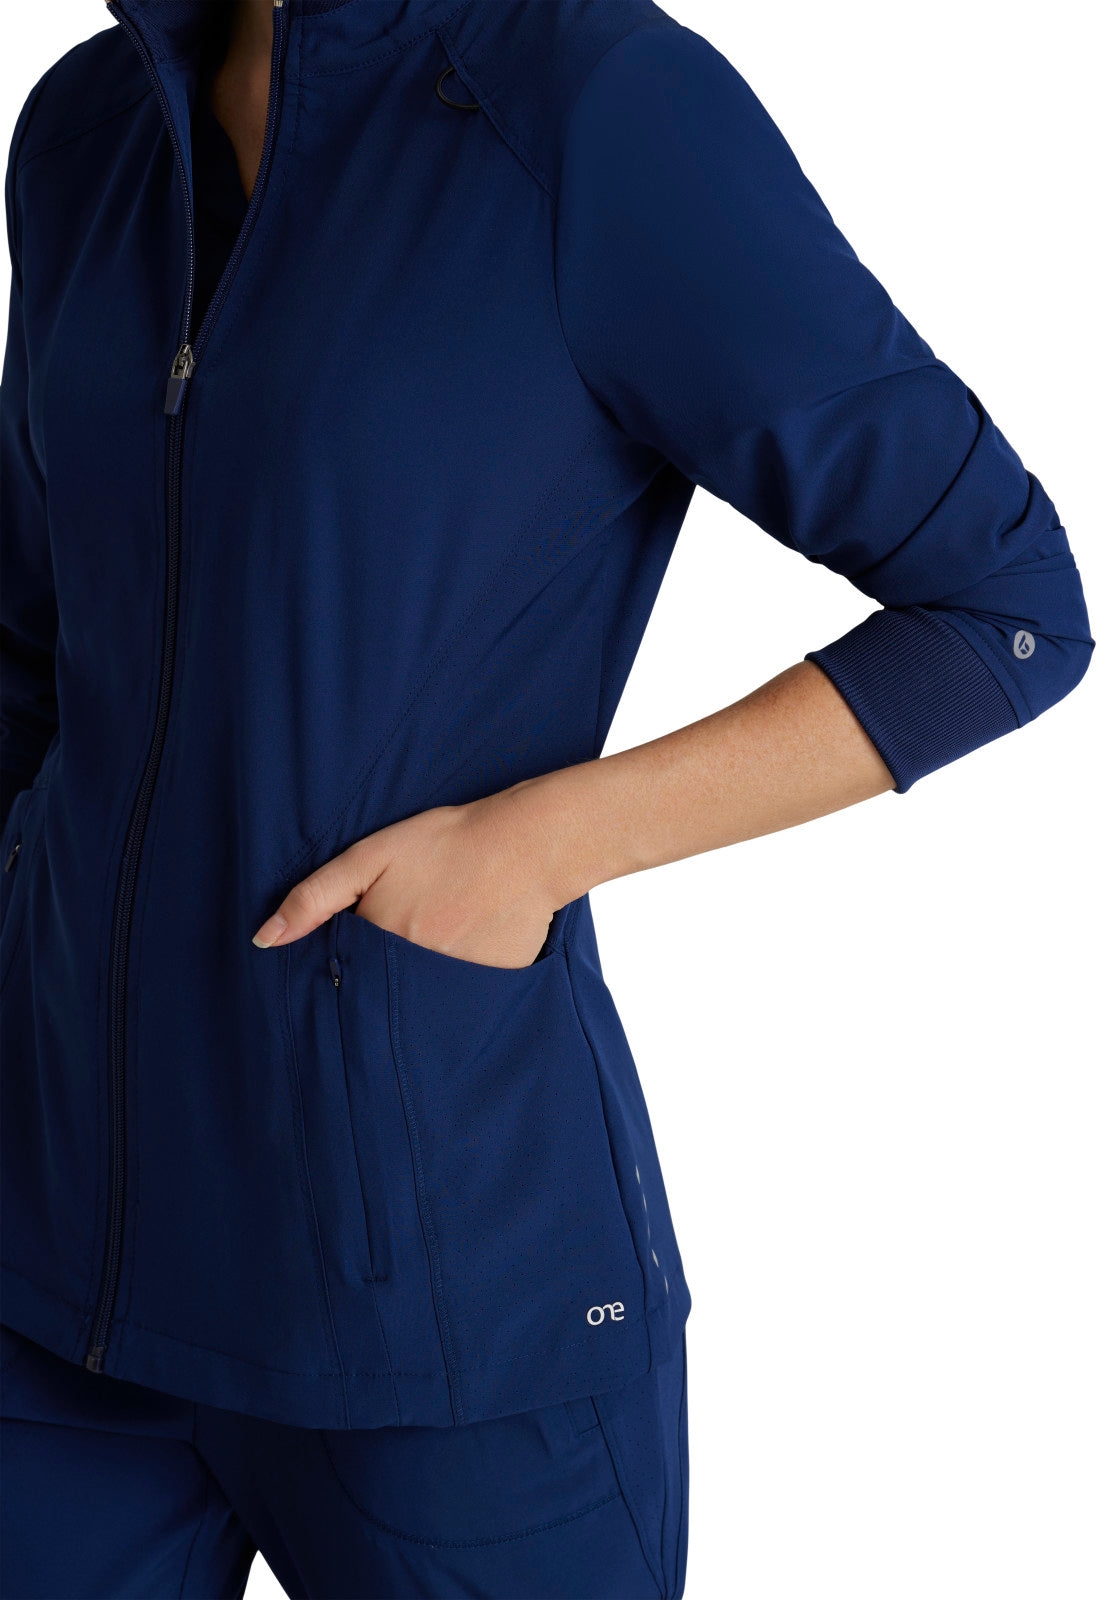 Women's Venture Warm-Up Scrub Jacket